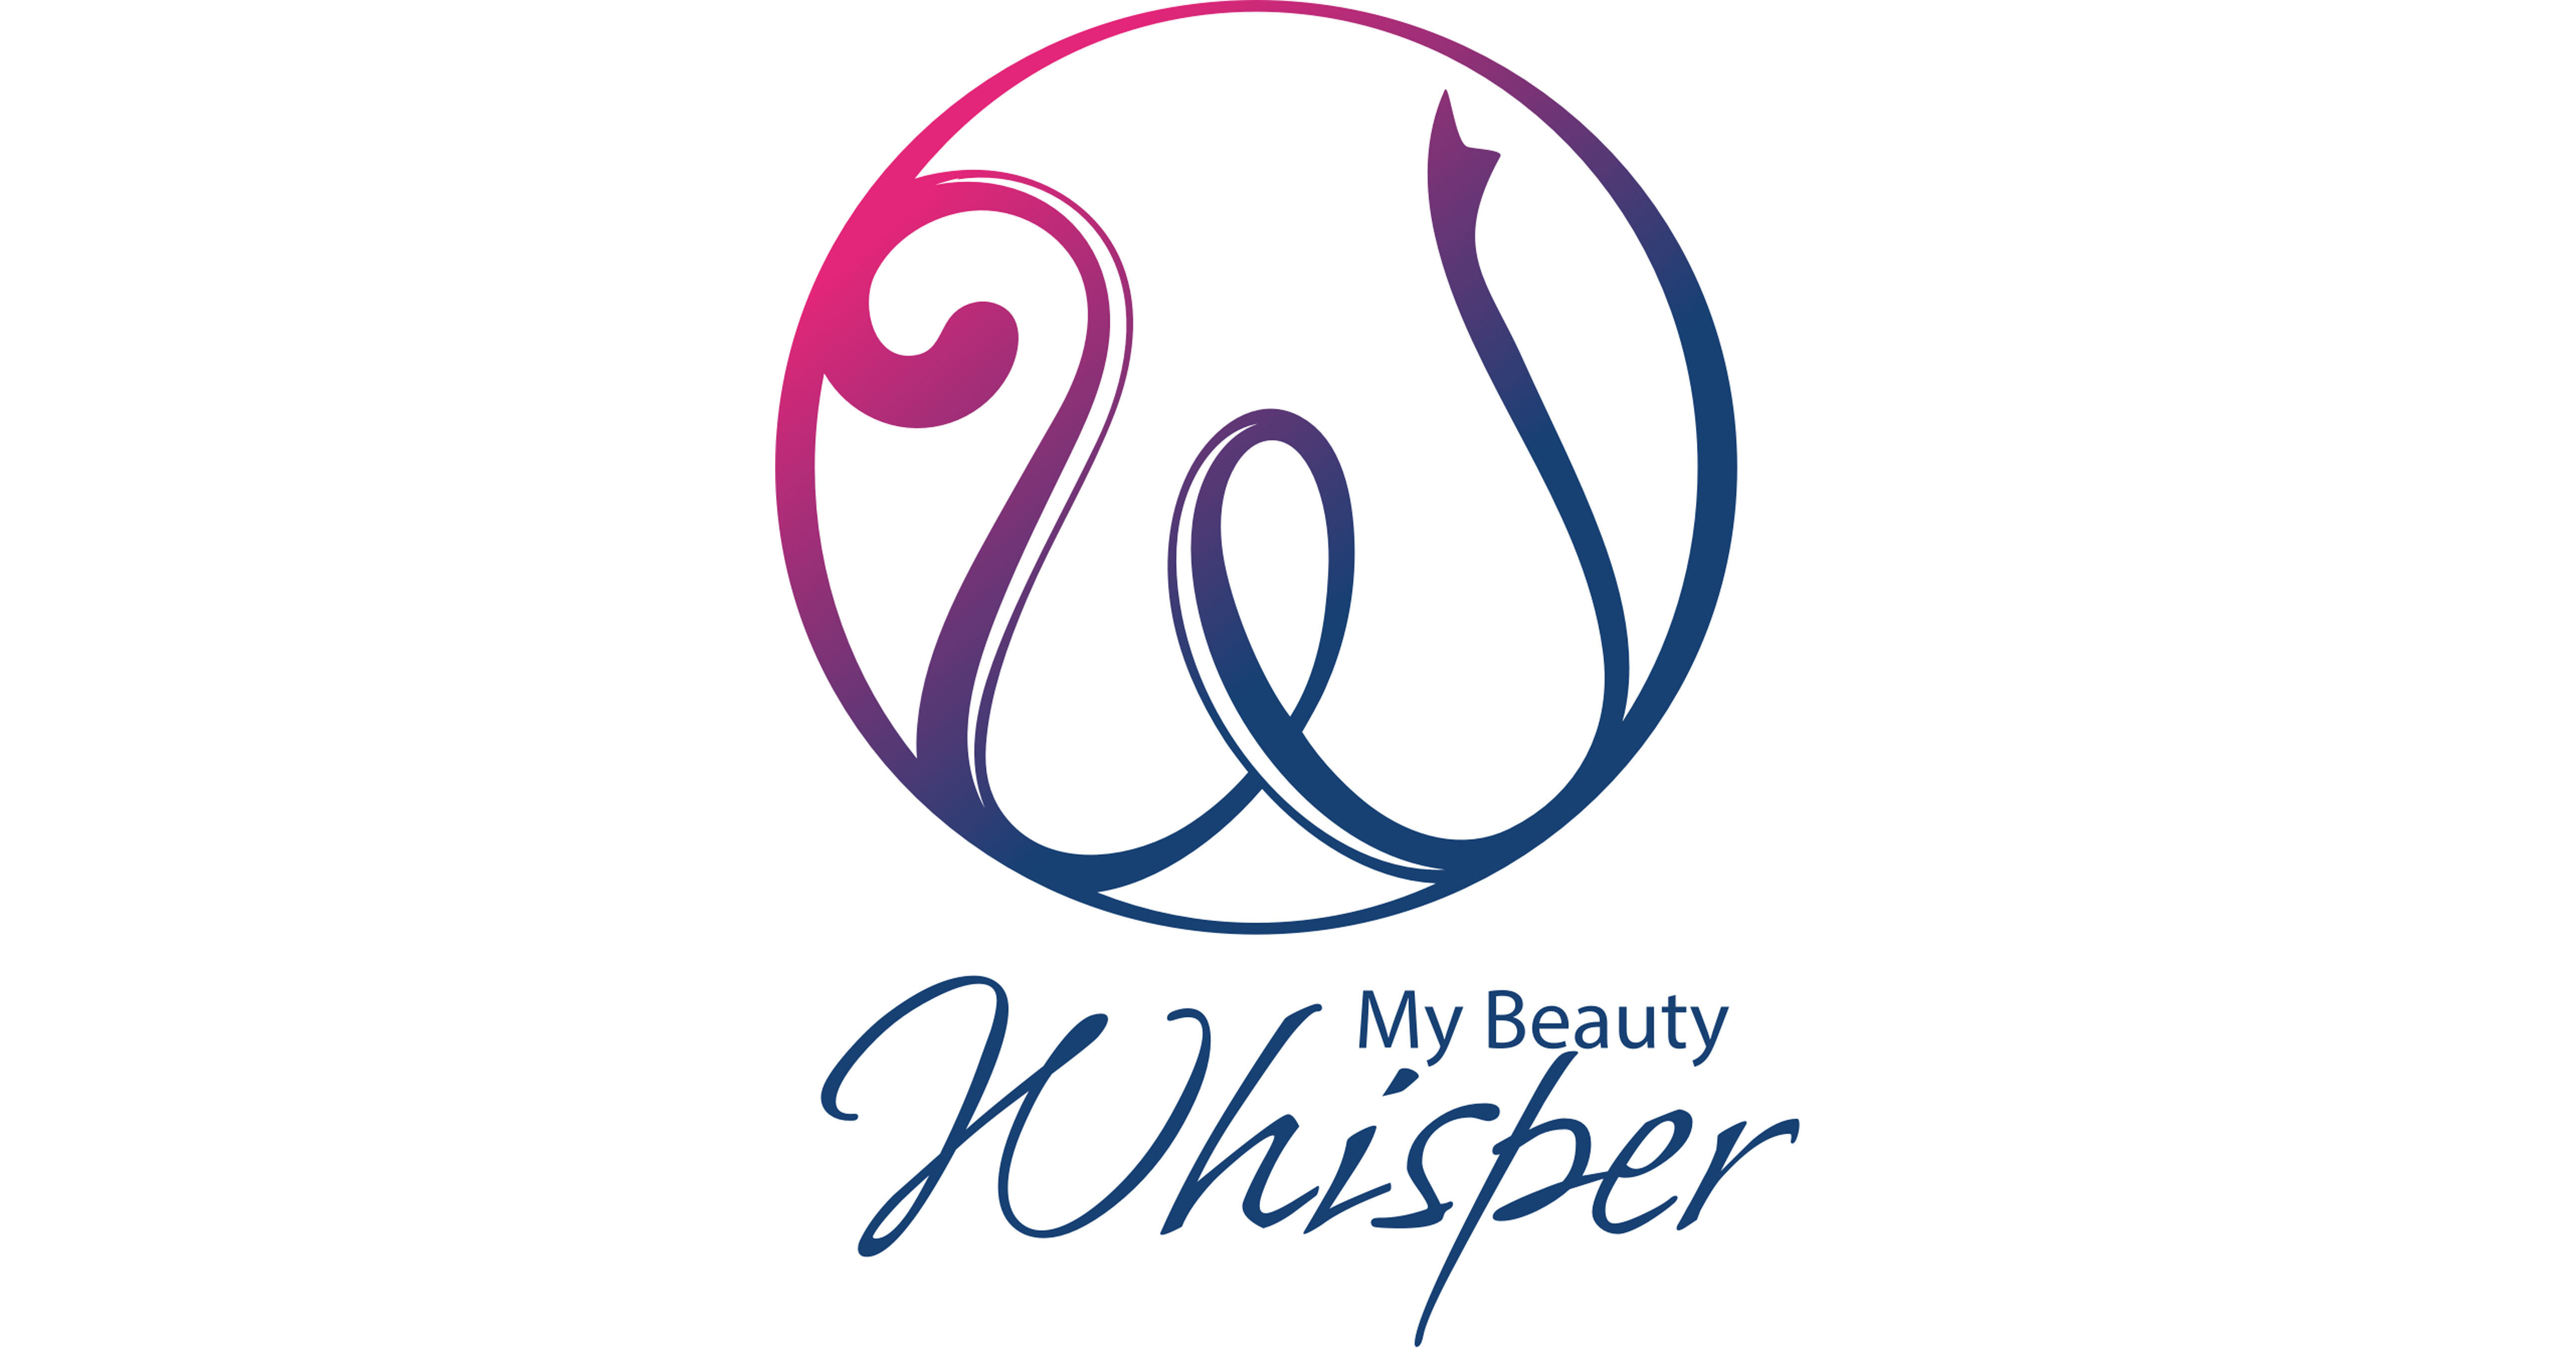 whisper logo